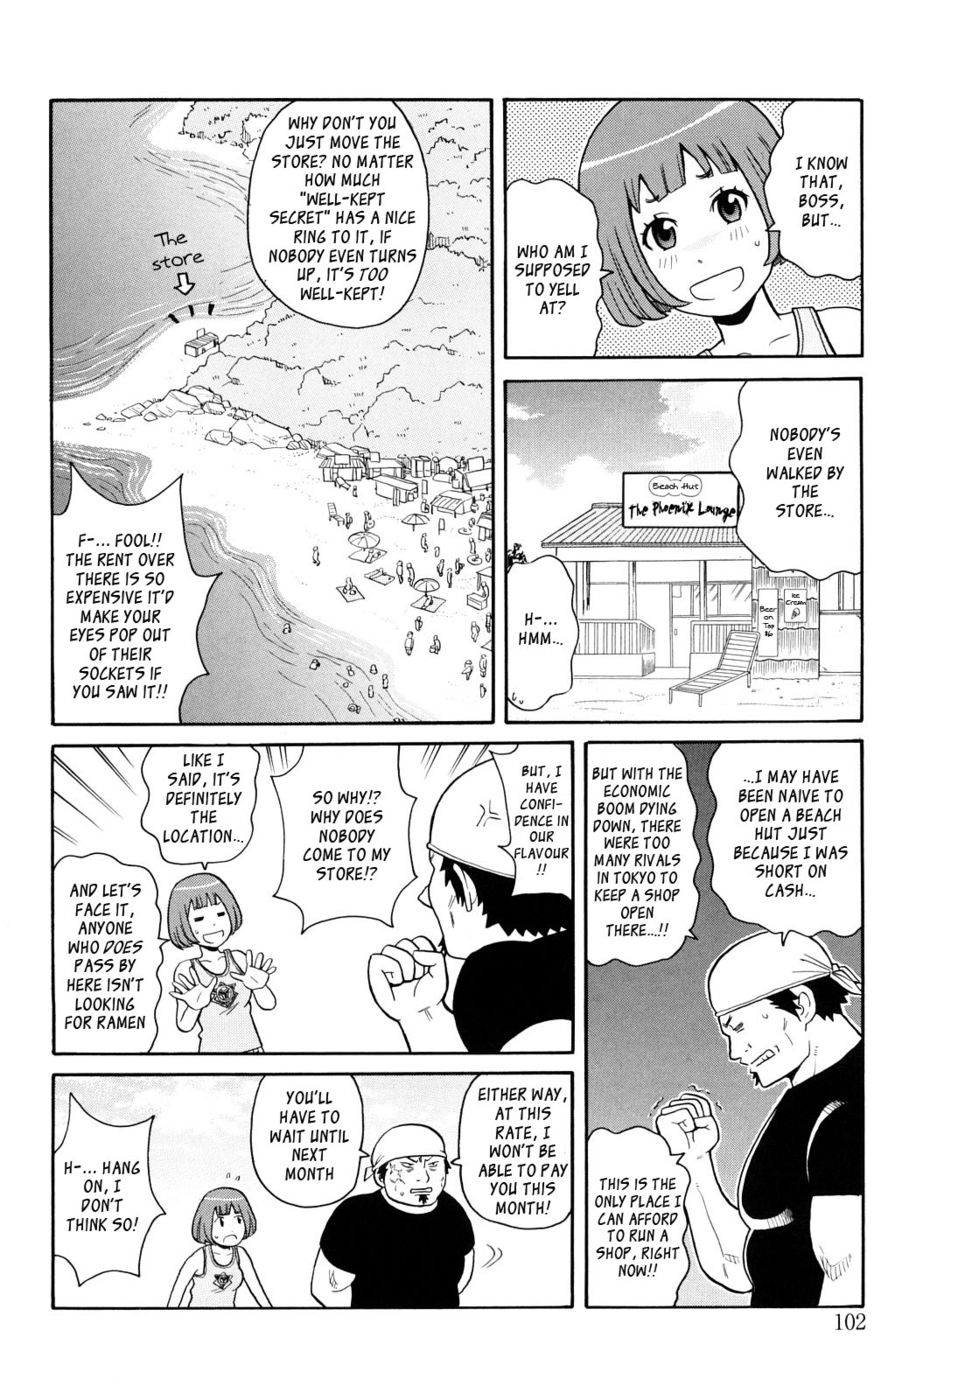 Hentai Manga Comic-Crash on the Beach-Read-2